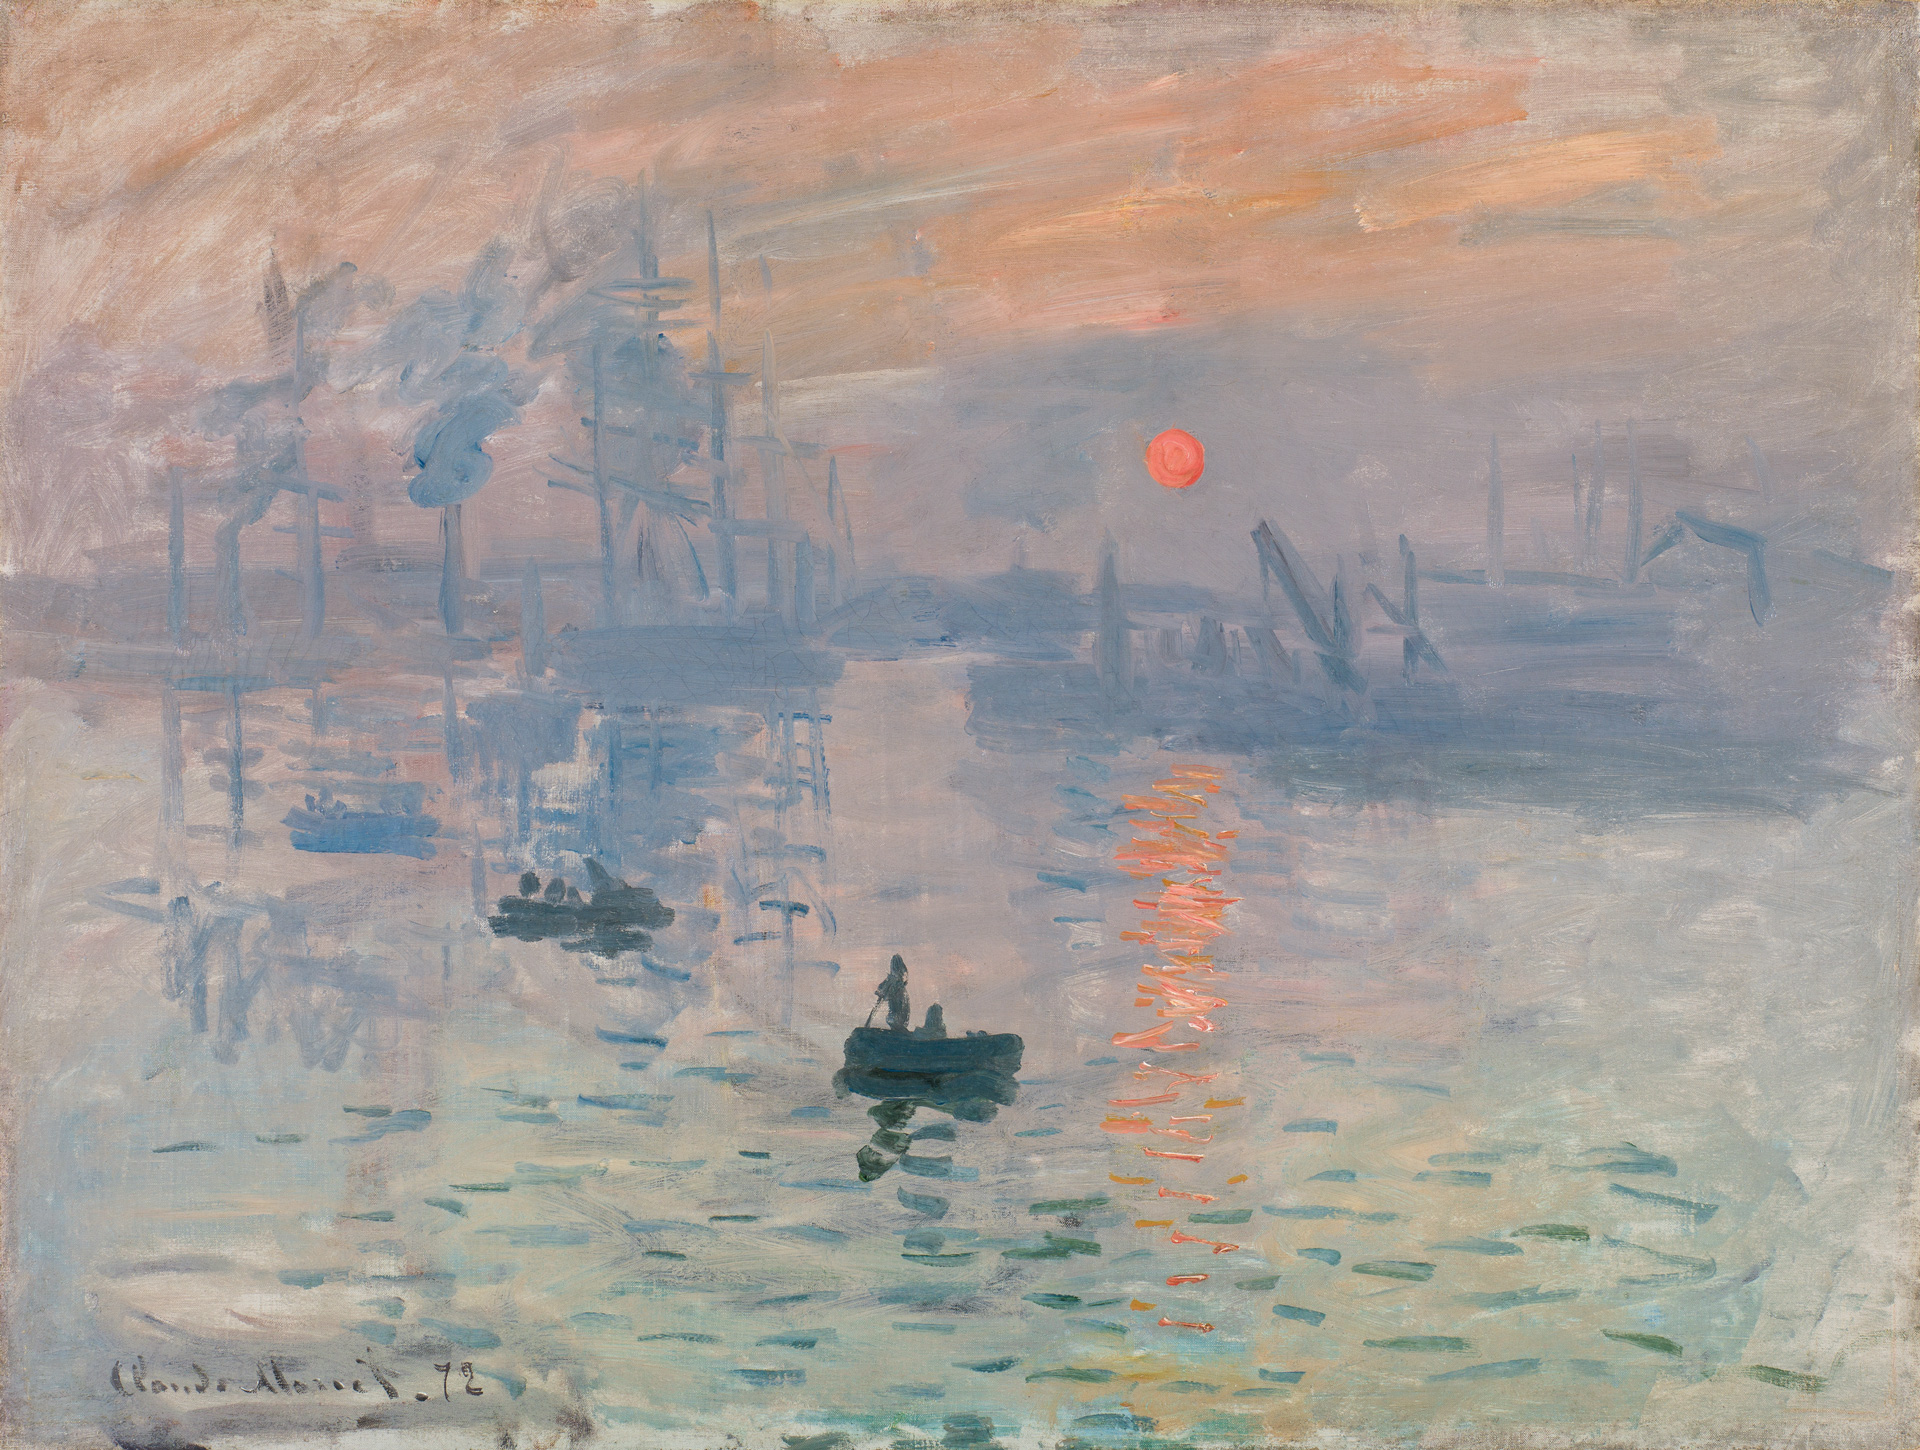 Claude Monet, Impression, soleil levant, 1872 © Musée Marmottan Monet, Paris